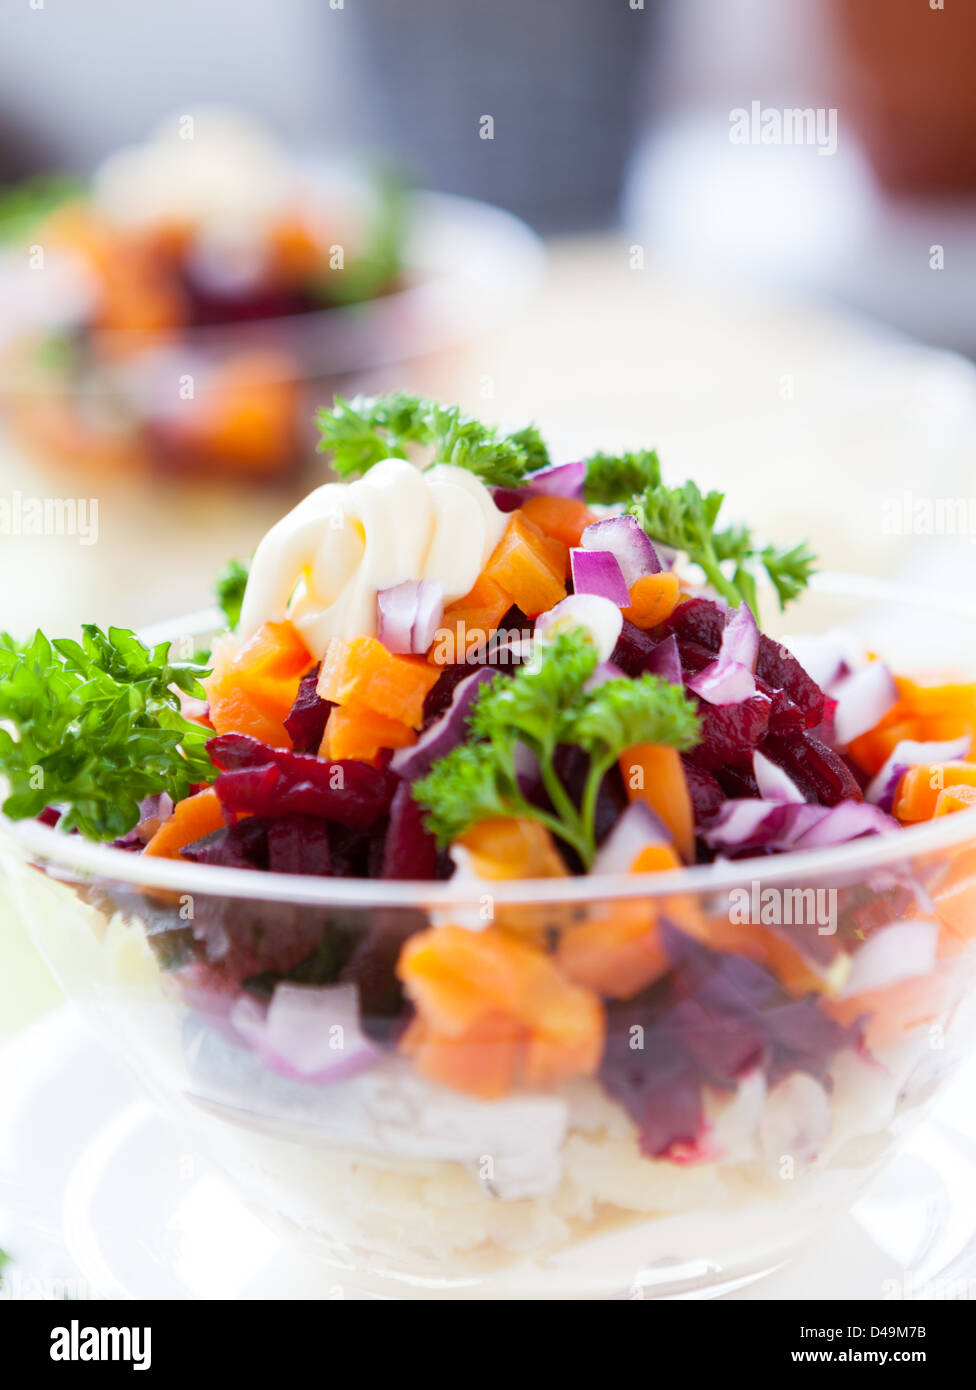 Appetizing salad in a transparent salad bowl, food closeup Stock Photo